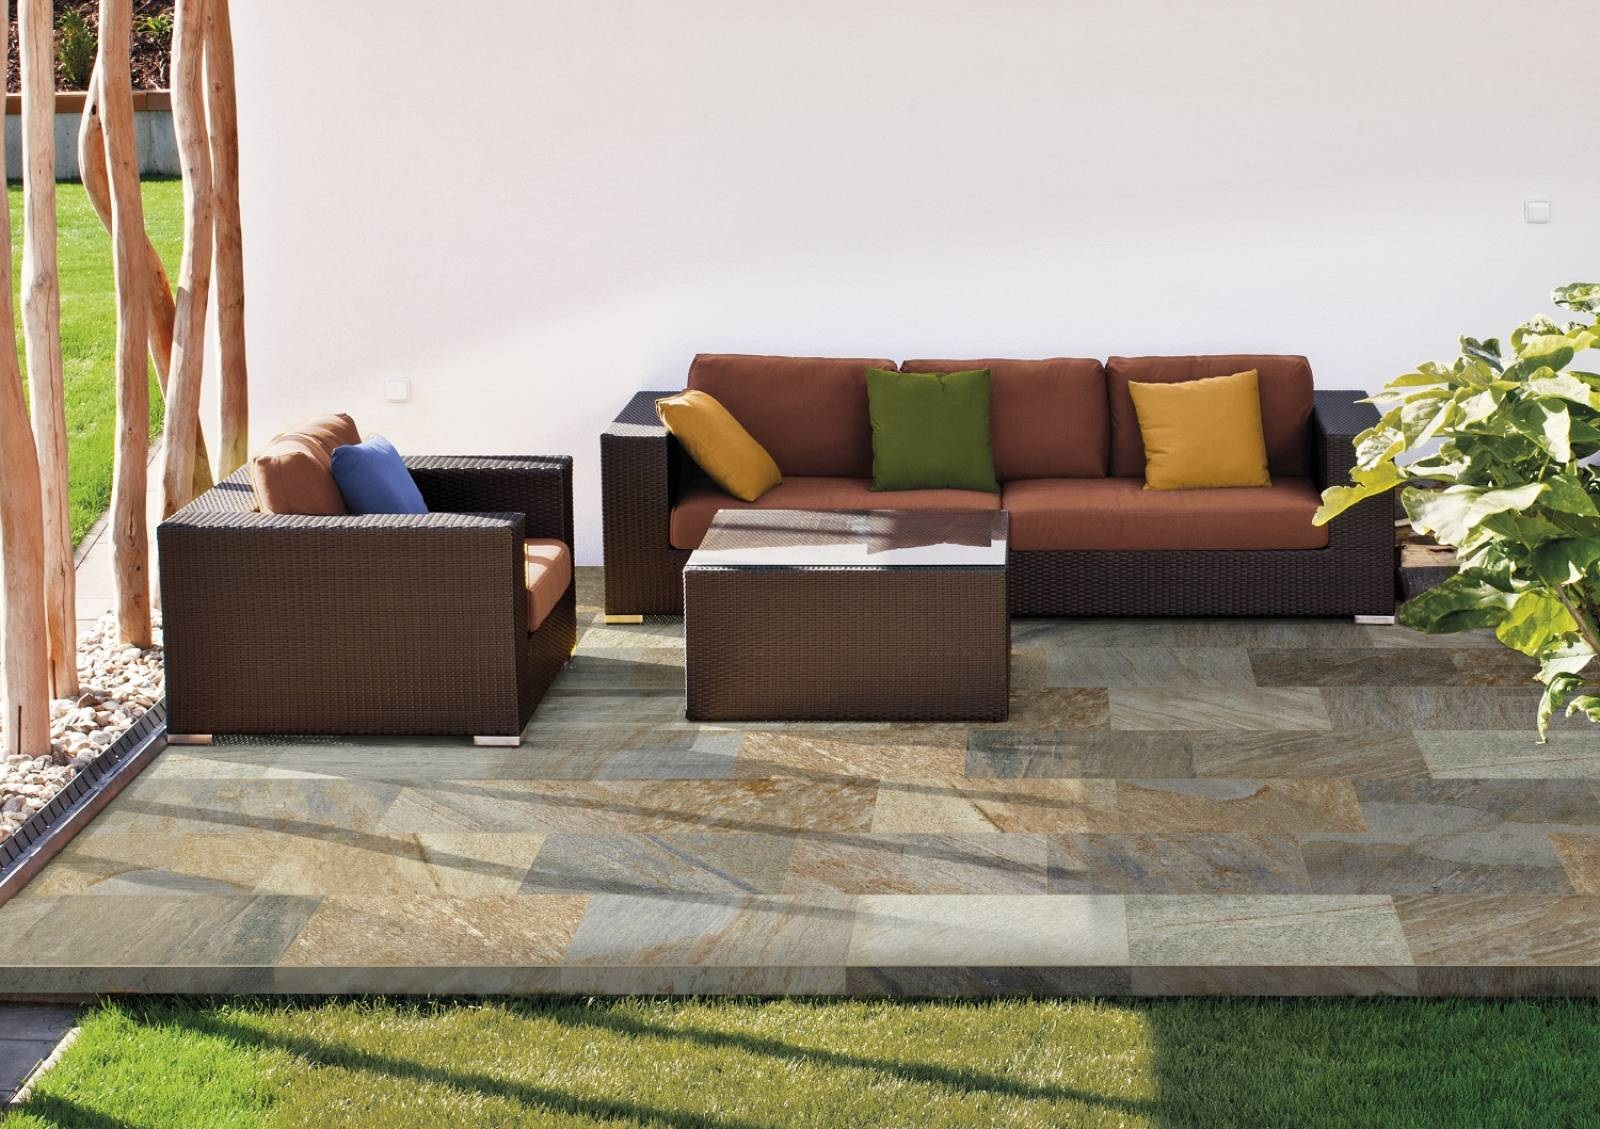 Carrelage effet pierre marron nuances beige 30x60 cm sur terrasse avec mobilier de jardin et végétation